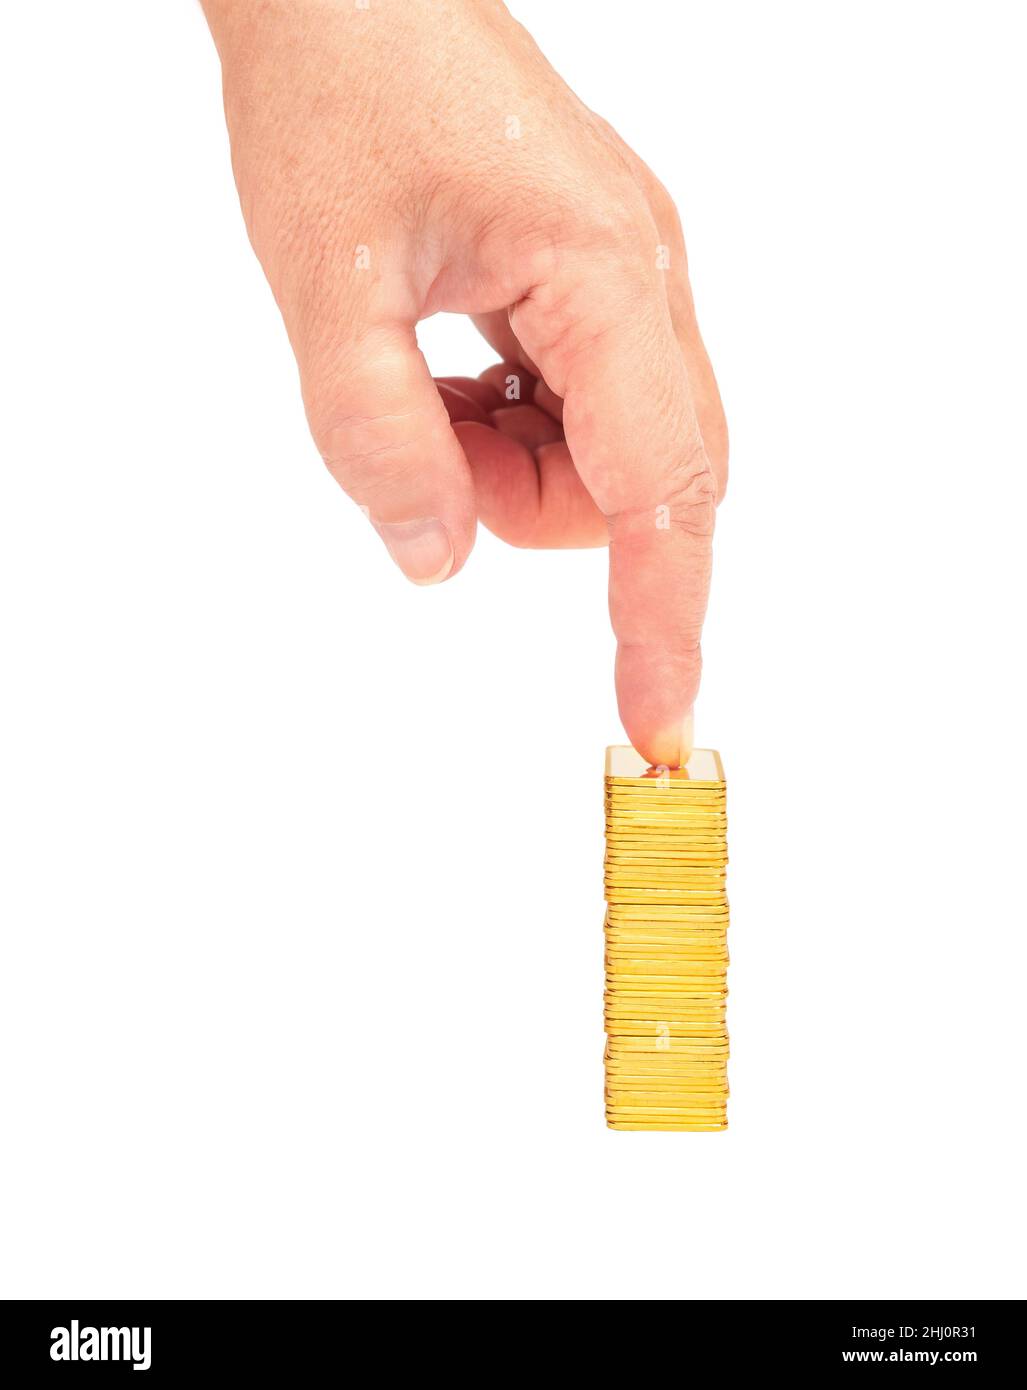 Der Zeigefinger zeigt auf einen Stapel von Goldbarren, die auf weißem Hintergrund isoliert sind Stockfoto